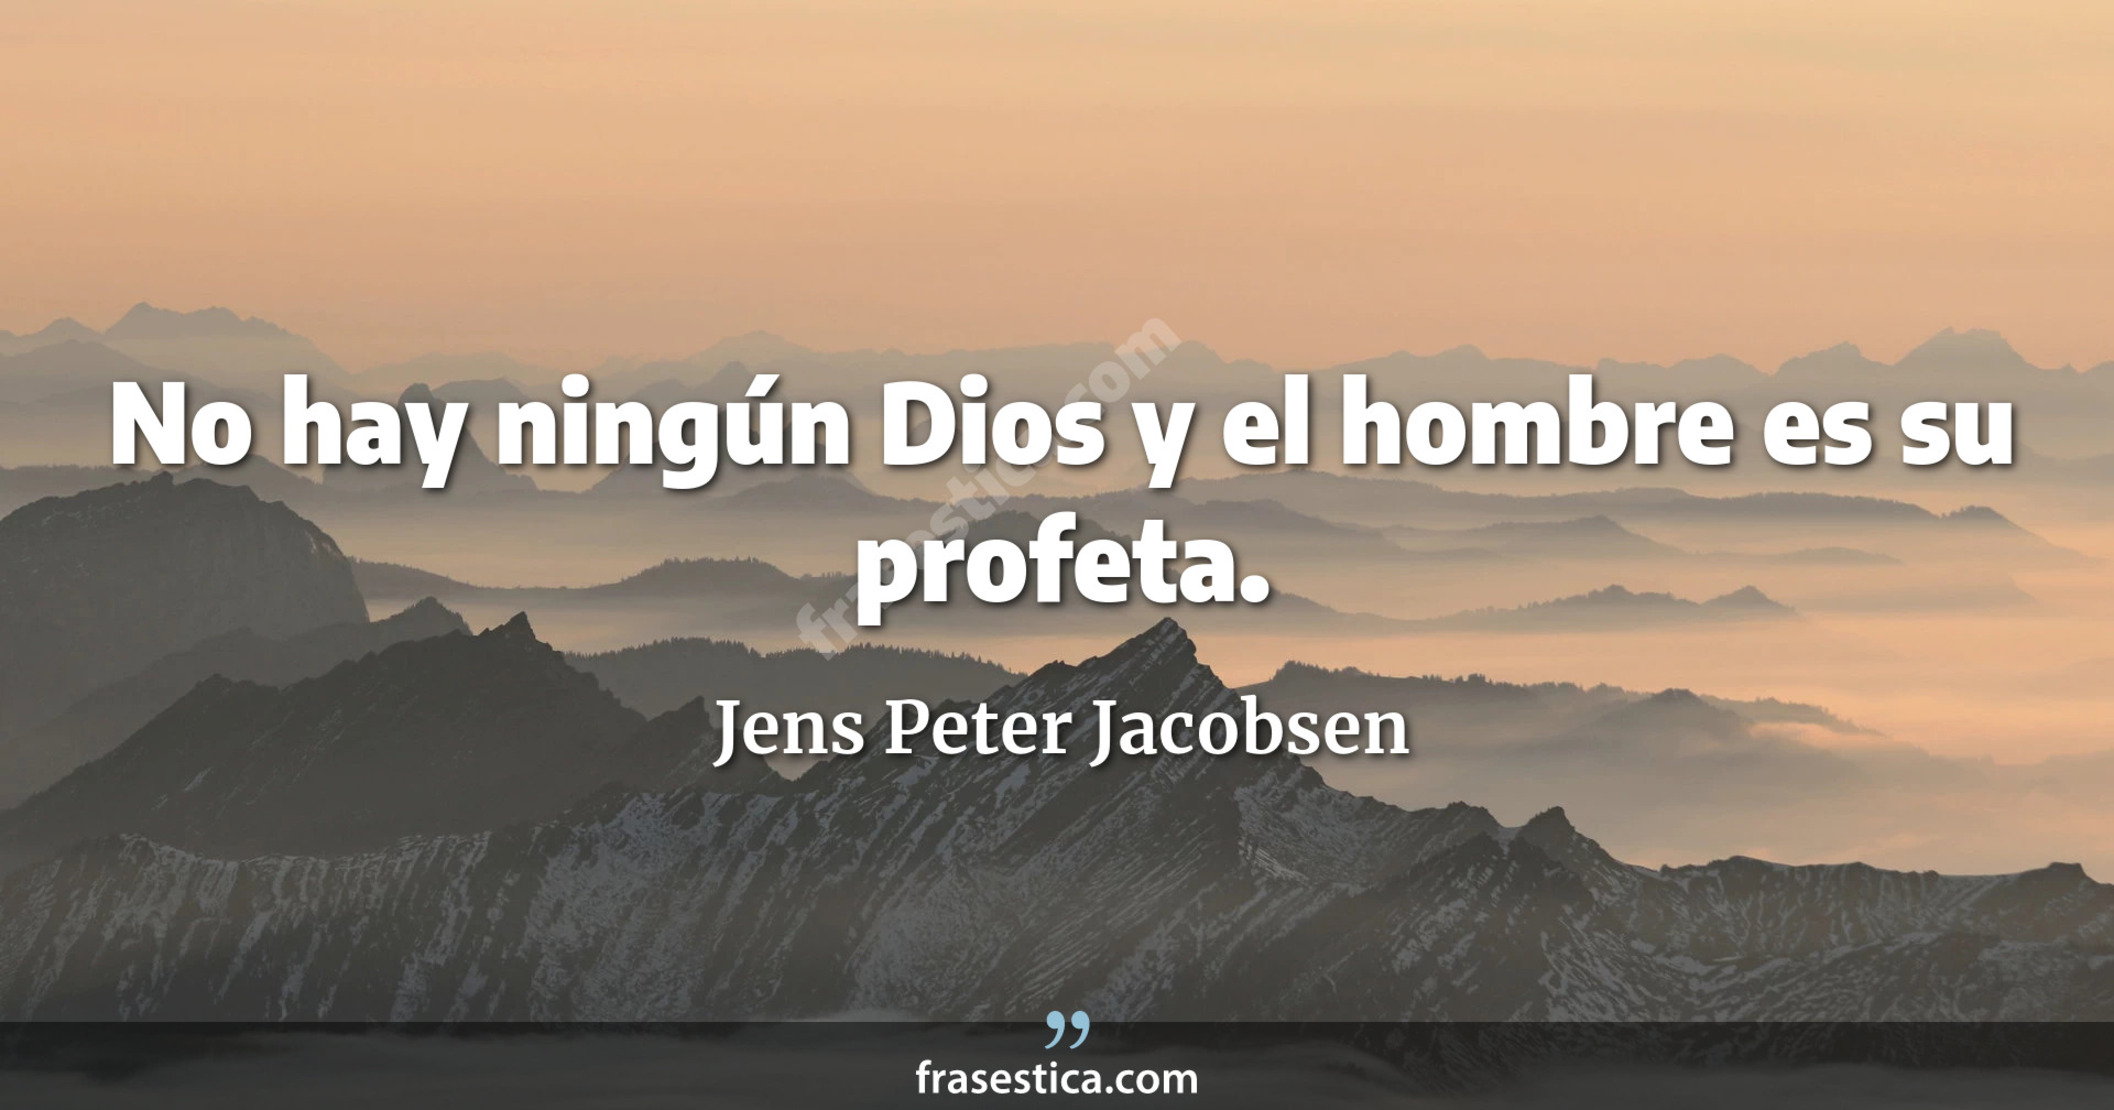 No hay ningún Dios y el hombre es su profeta. - Jens Peter Jacobsen